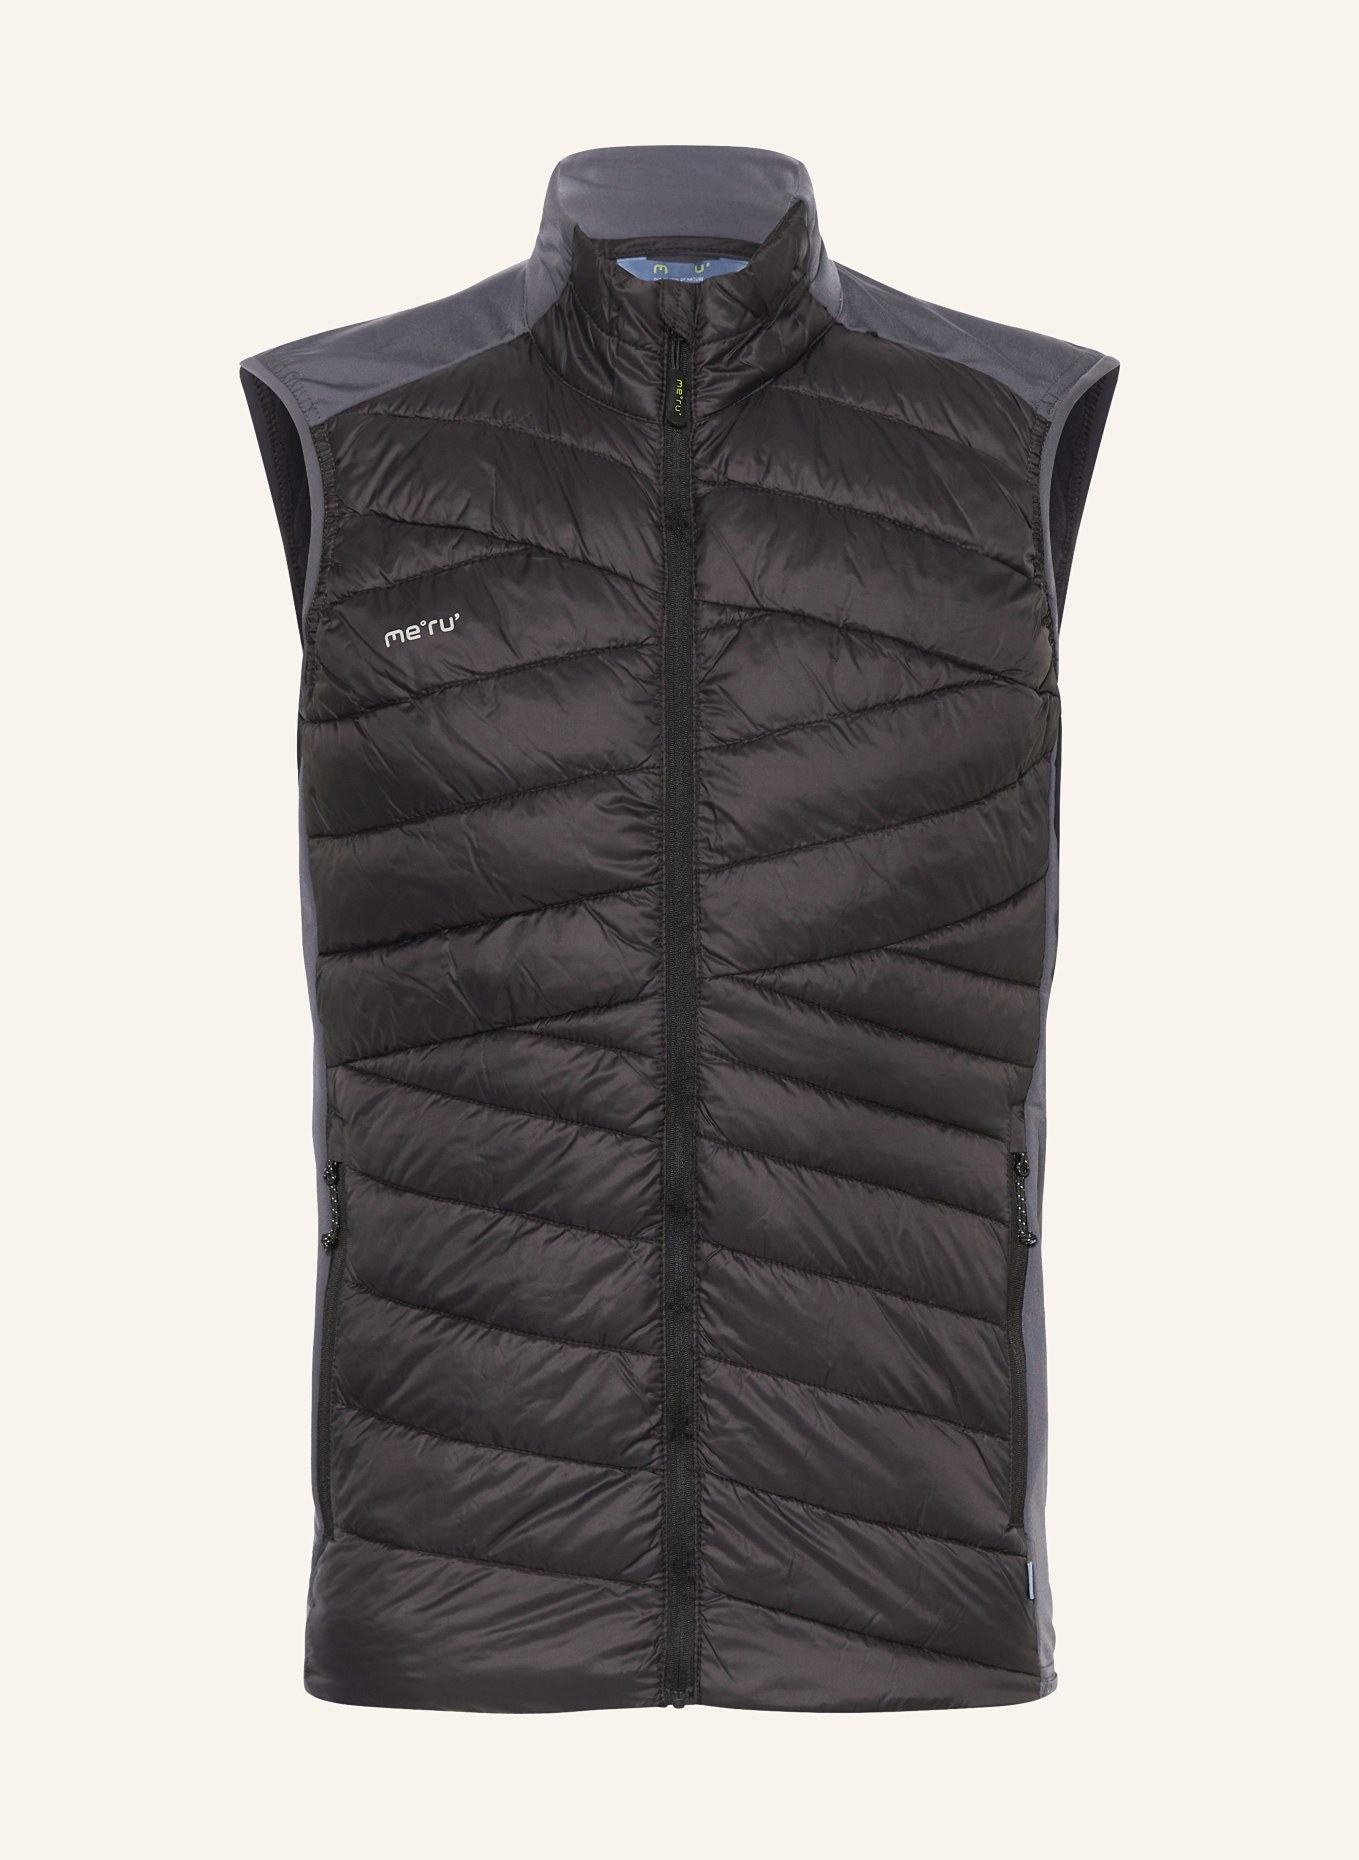 me°ru' Hybrid quilted vest BATHURST, Color: DARK GRAY/ GRAY (Image 1)